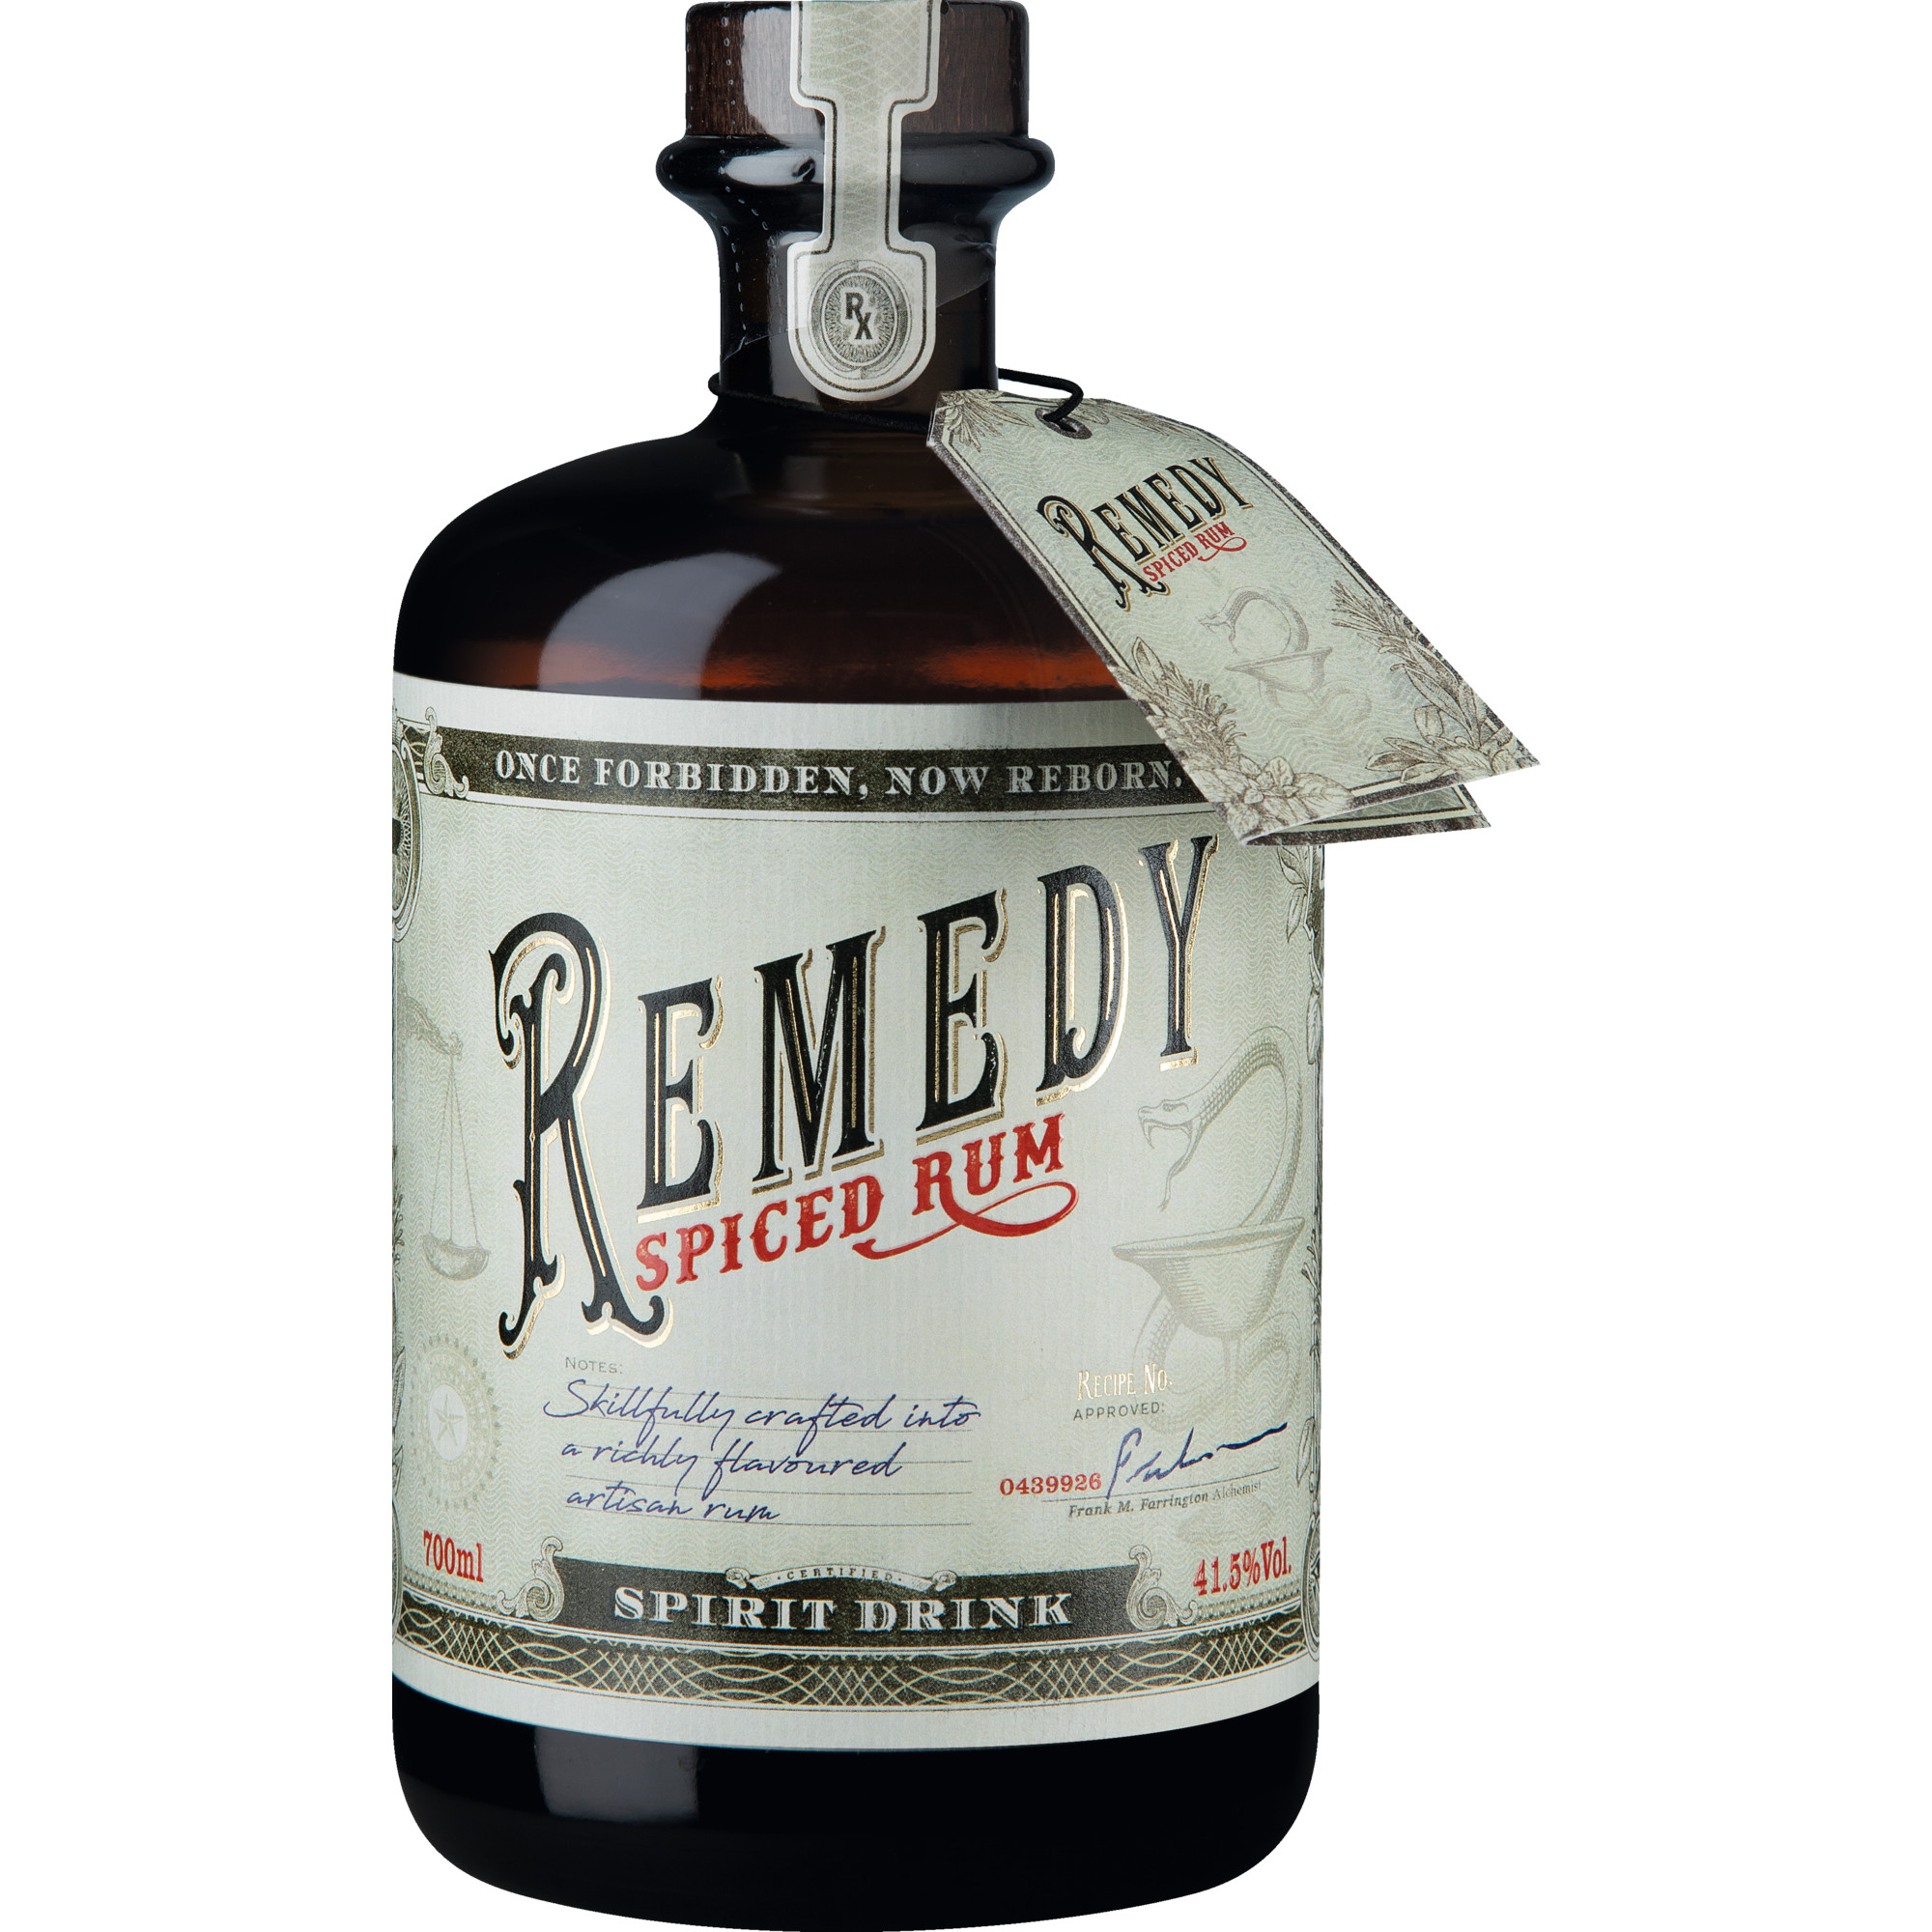 Remedy Spiced Rum, 0,7 L, 41,50 % Vol., Spirituosen Sierra Madre GmbH, Rohrstr. 26, 58093 Hagen, Deutschland Hawesko DE